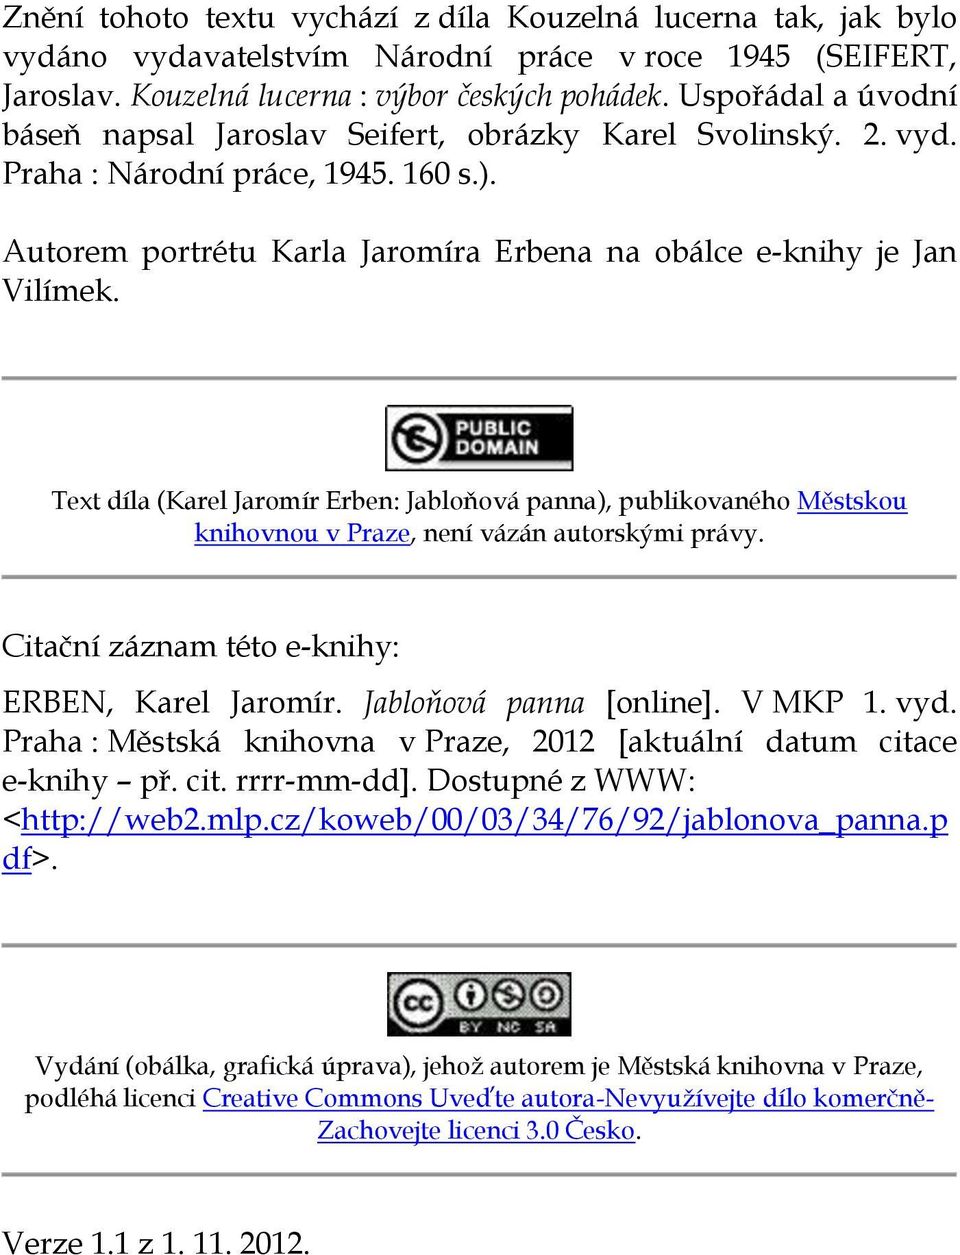 Text díla (Karel Jaromír Erben: Jabloňová panna), publikovaného Městskou knihovnou v Praze, není vázán autorskými právy. Citační záznam této e-knihy: ERBEN, Karel Jaromír. Jabloňová panna [online].